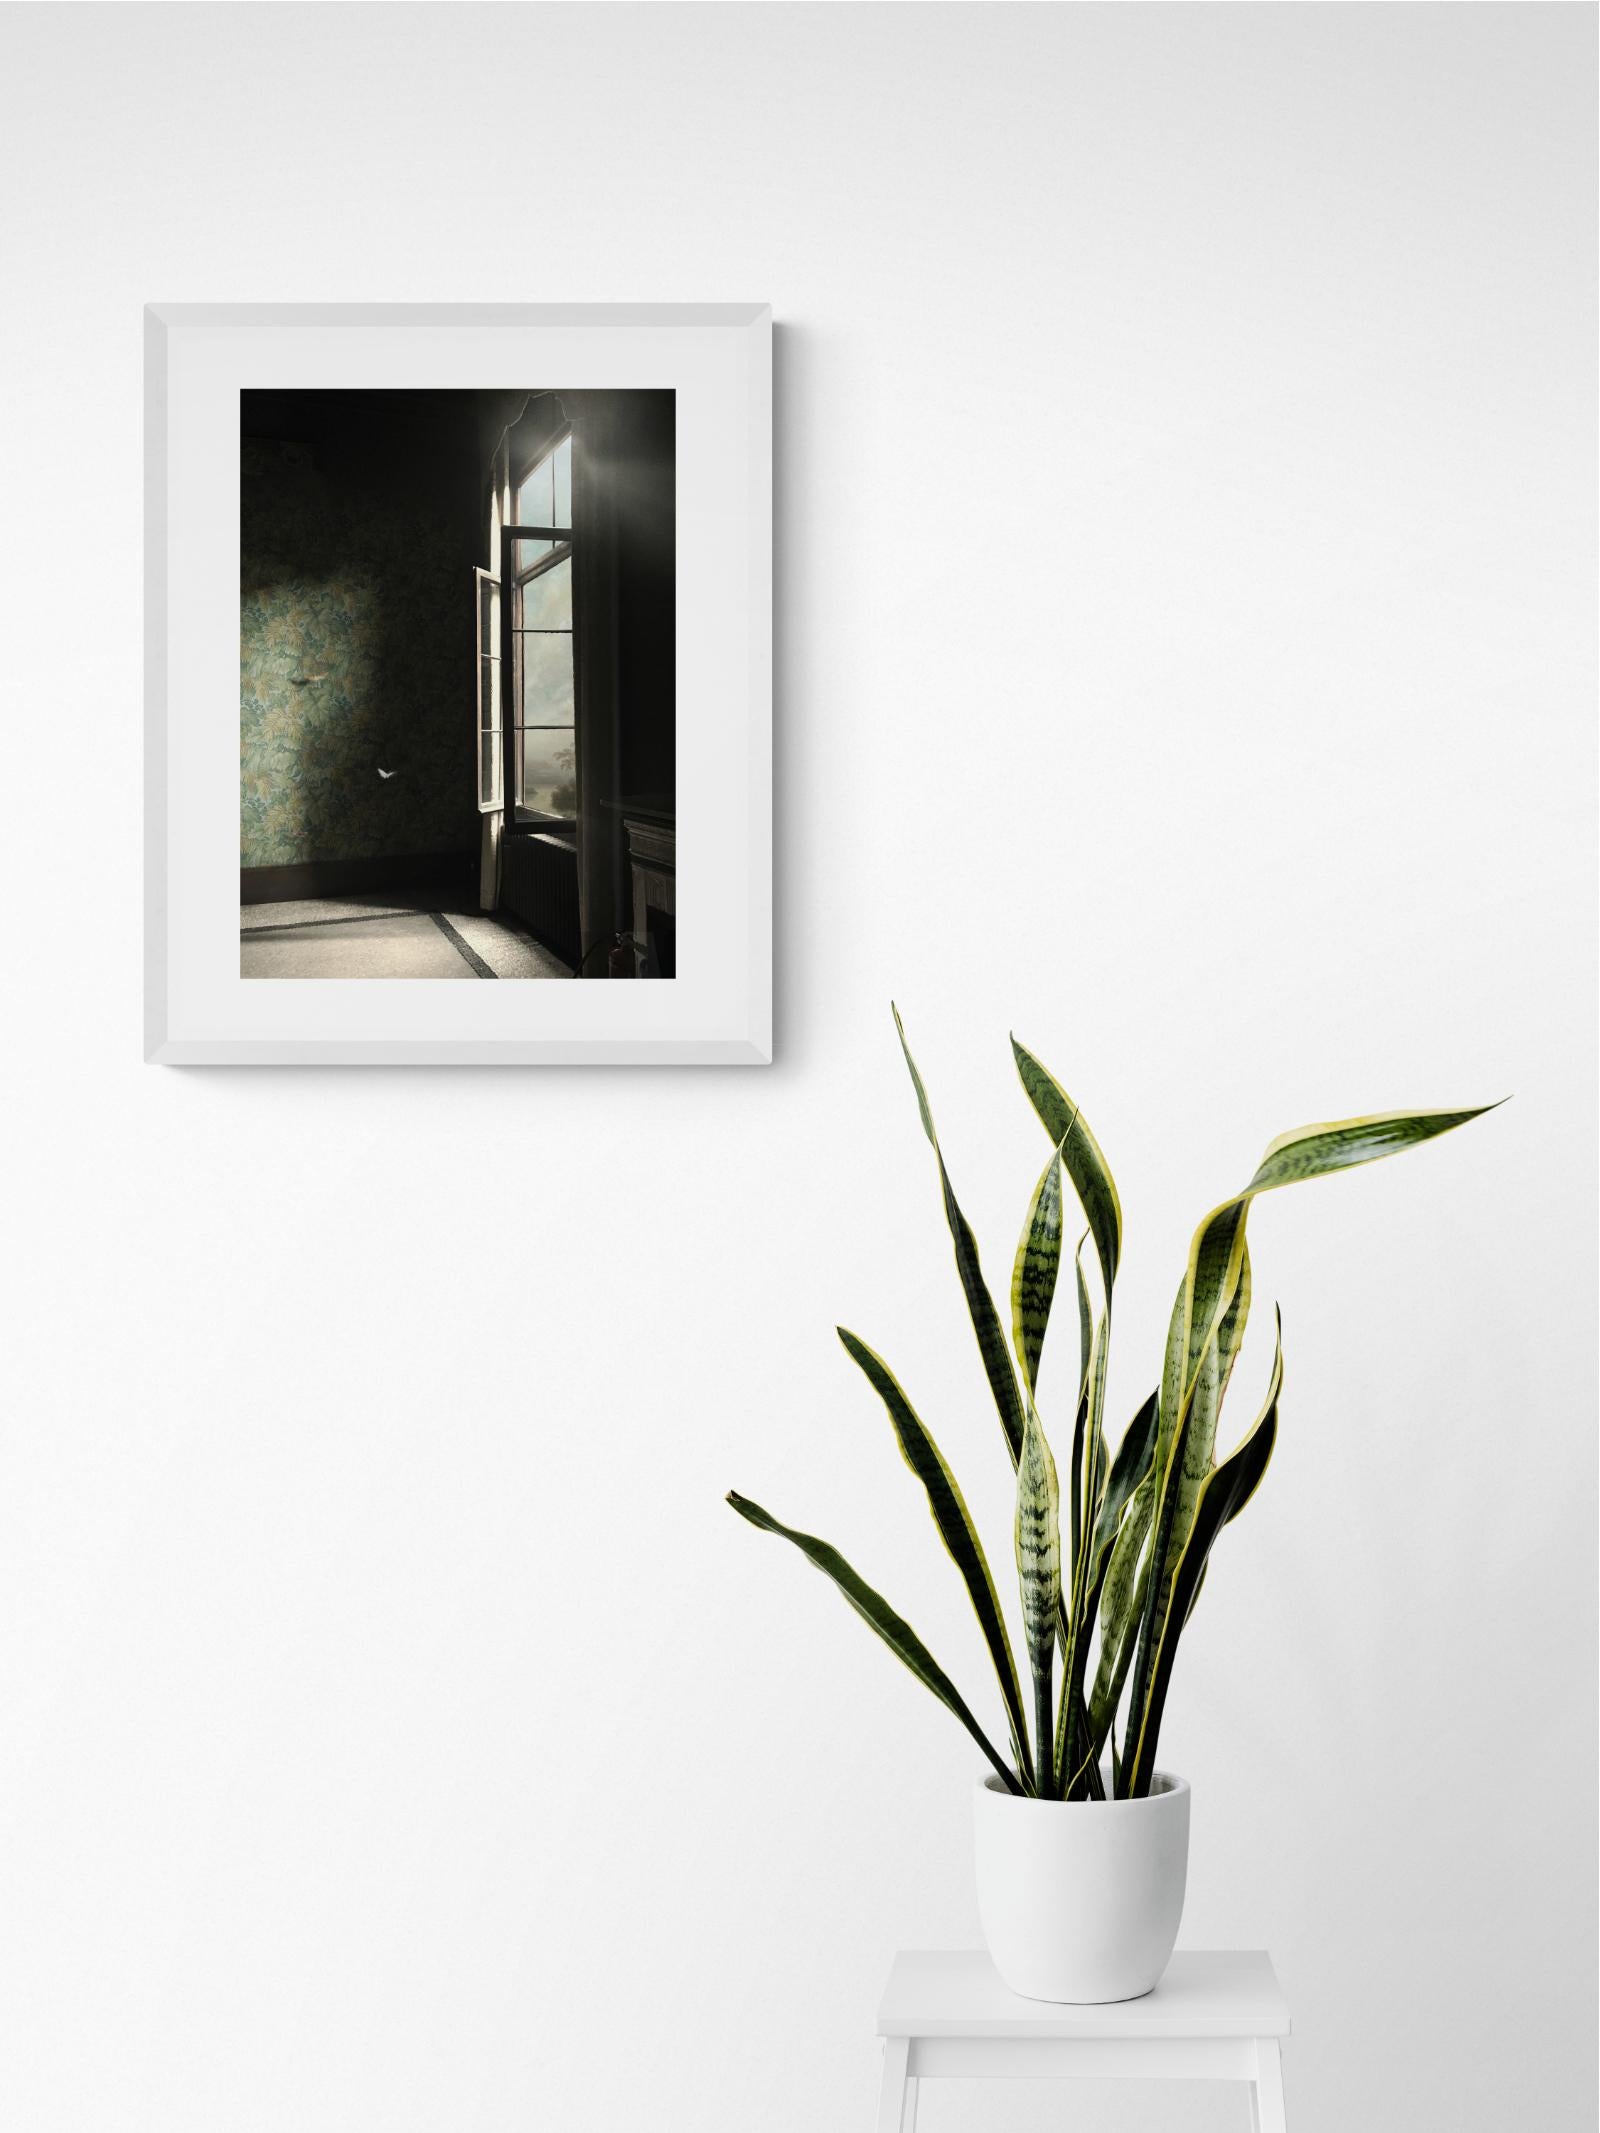 Eingangsfotografie VIII – Innenfotografie, Fotomontage, Film (Zeitgenössisch), Print, von Suzanne Moxhay